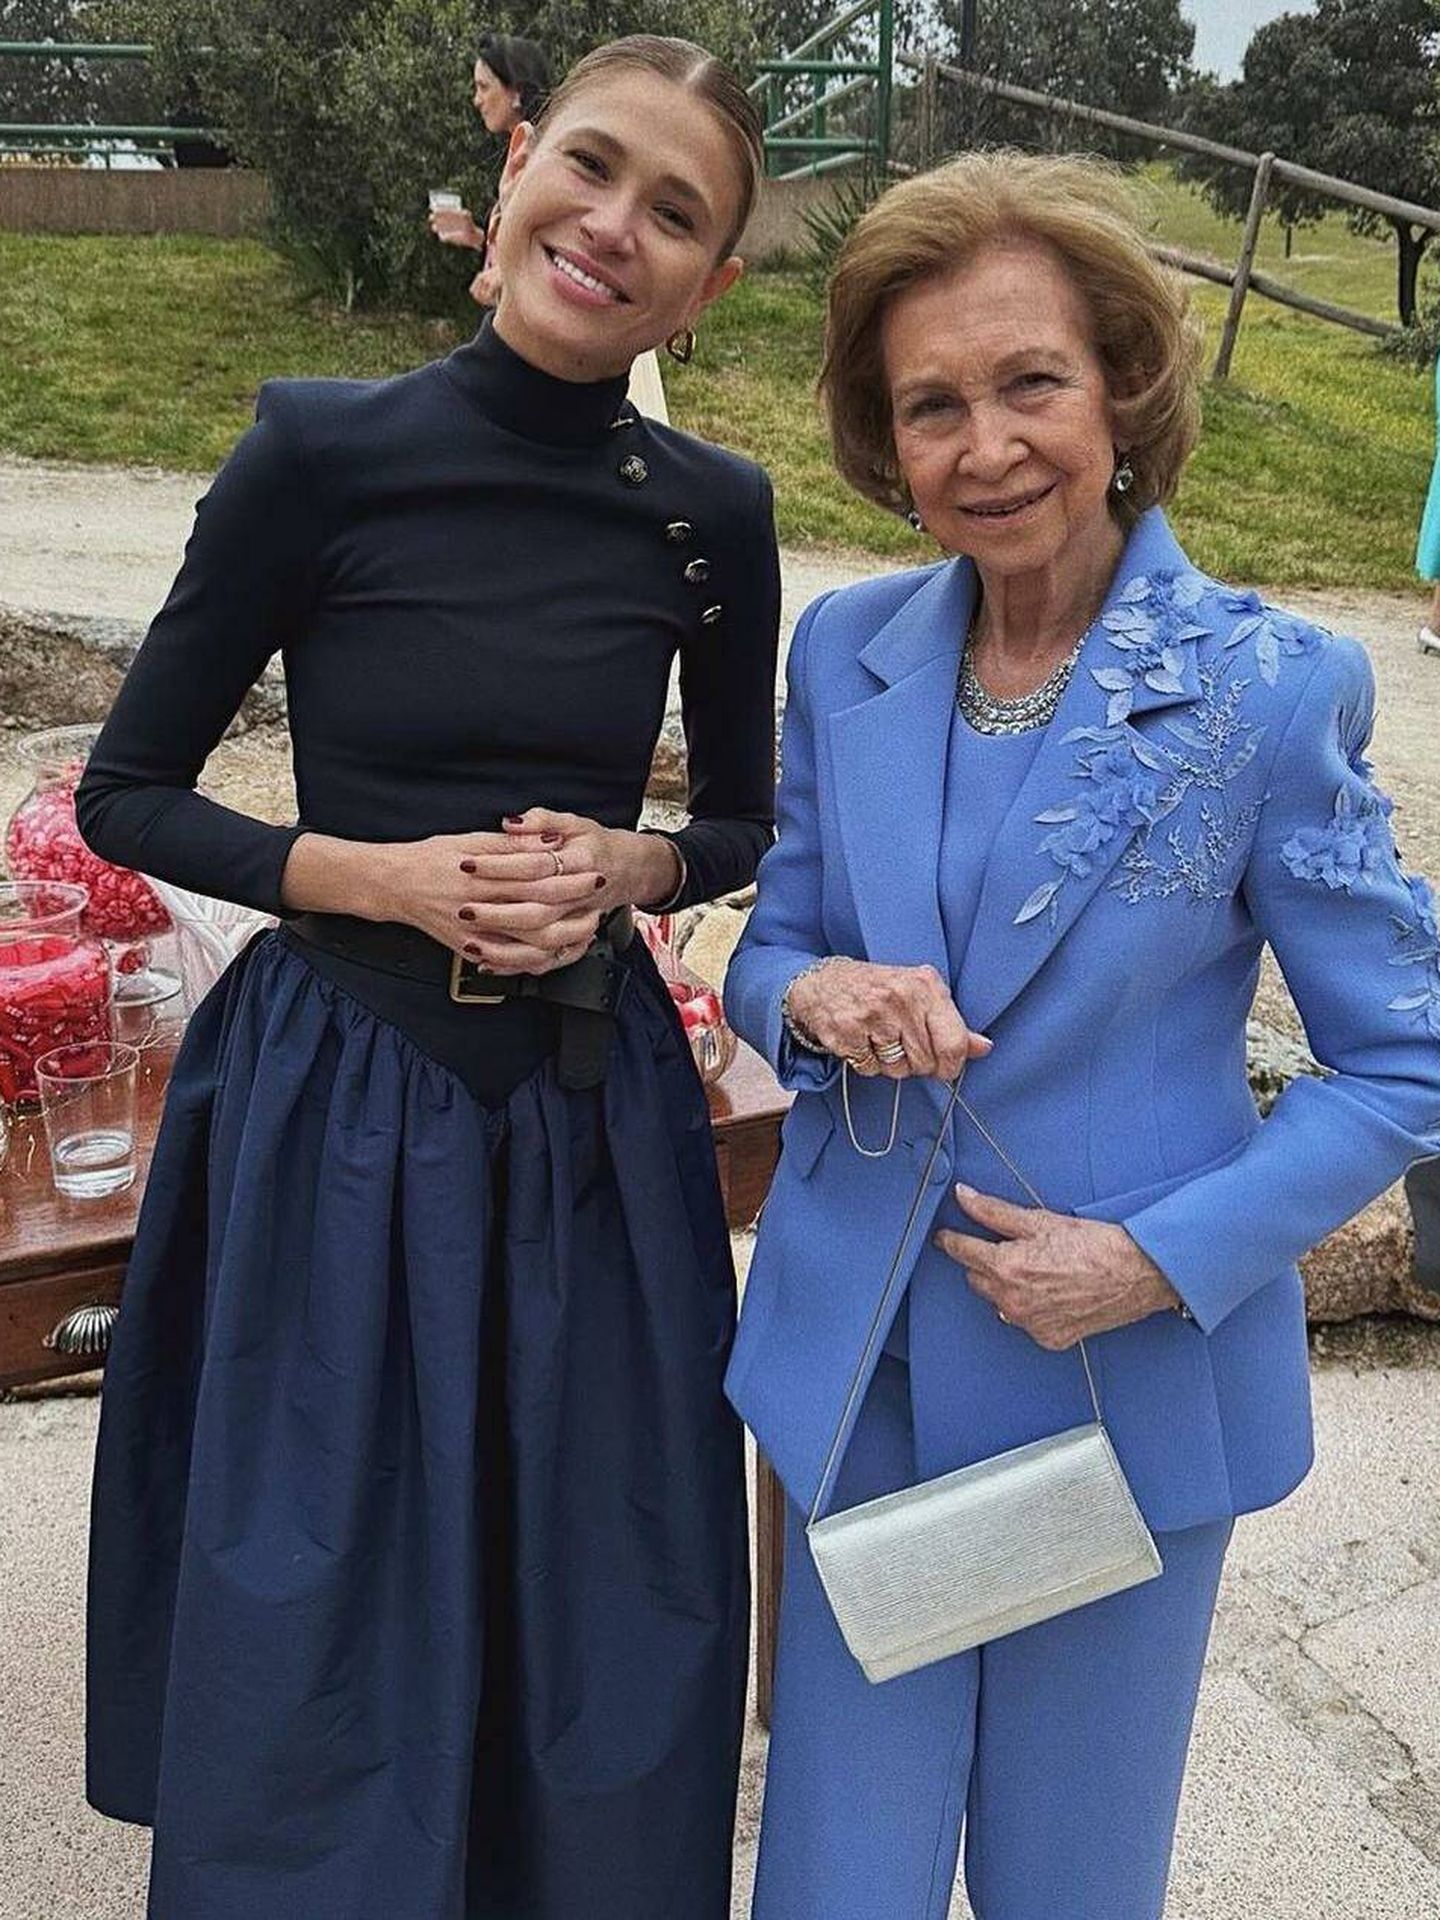  Carla Pereyra y la reina Sofía, en la boda de Almeida y Teresa Urquijo. (Instagram/@carlapereyra)